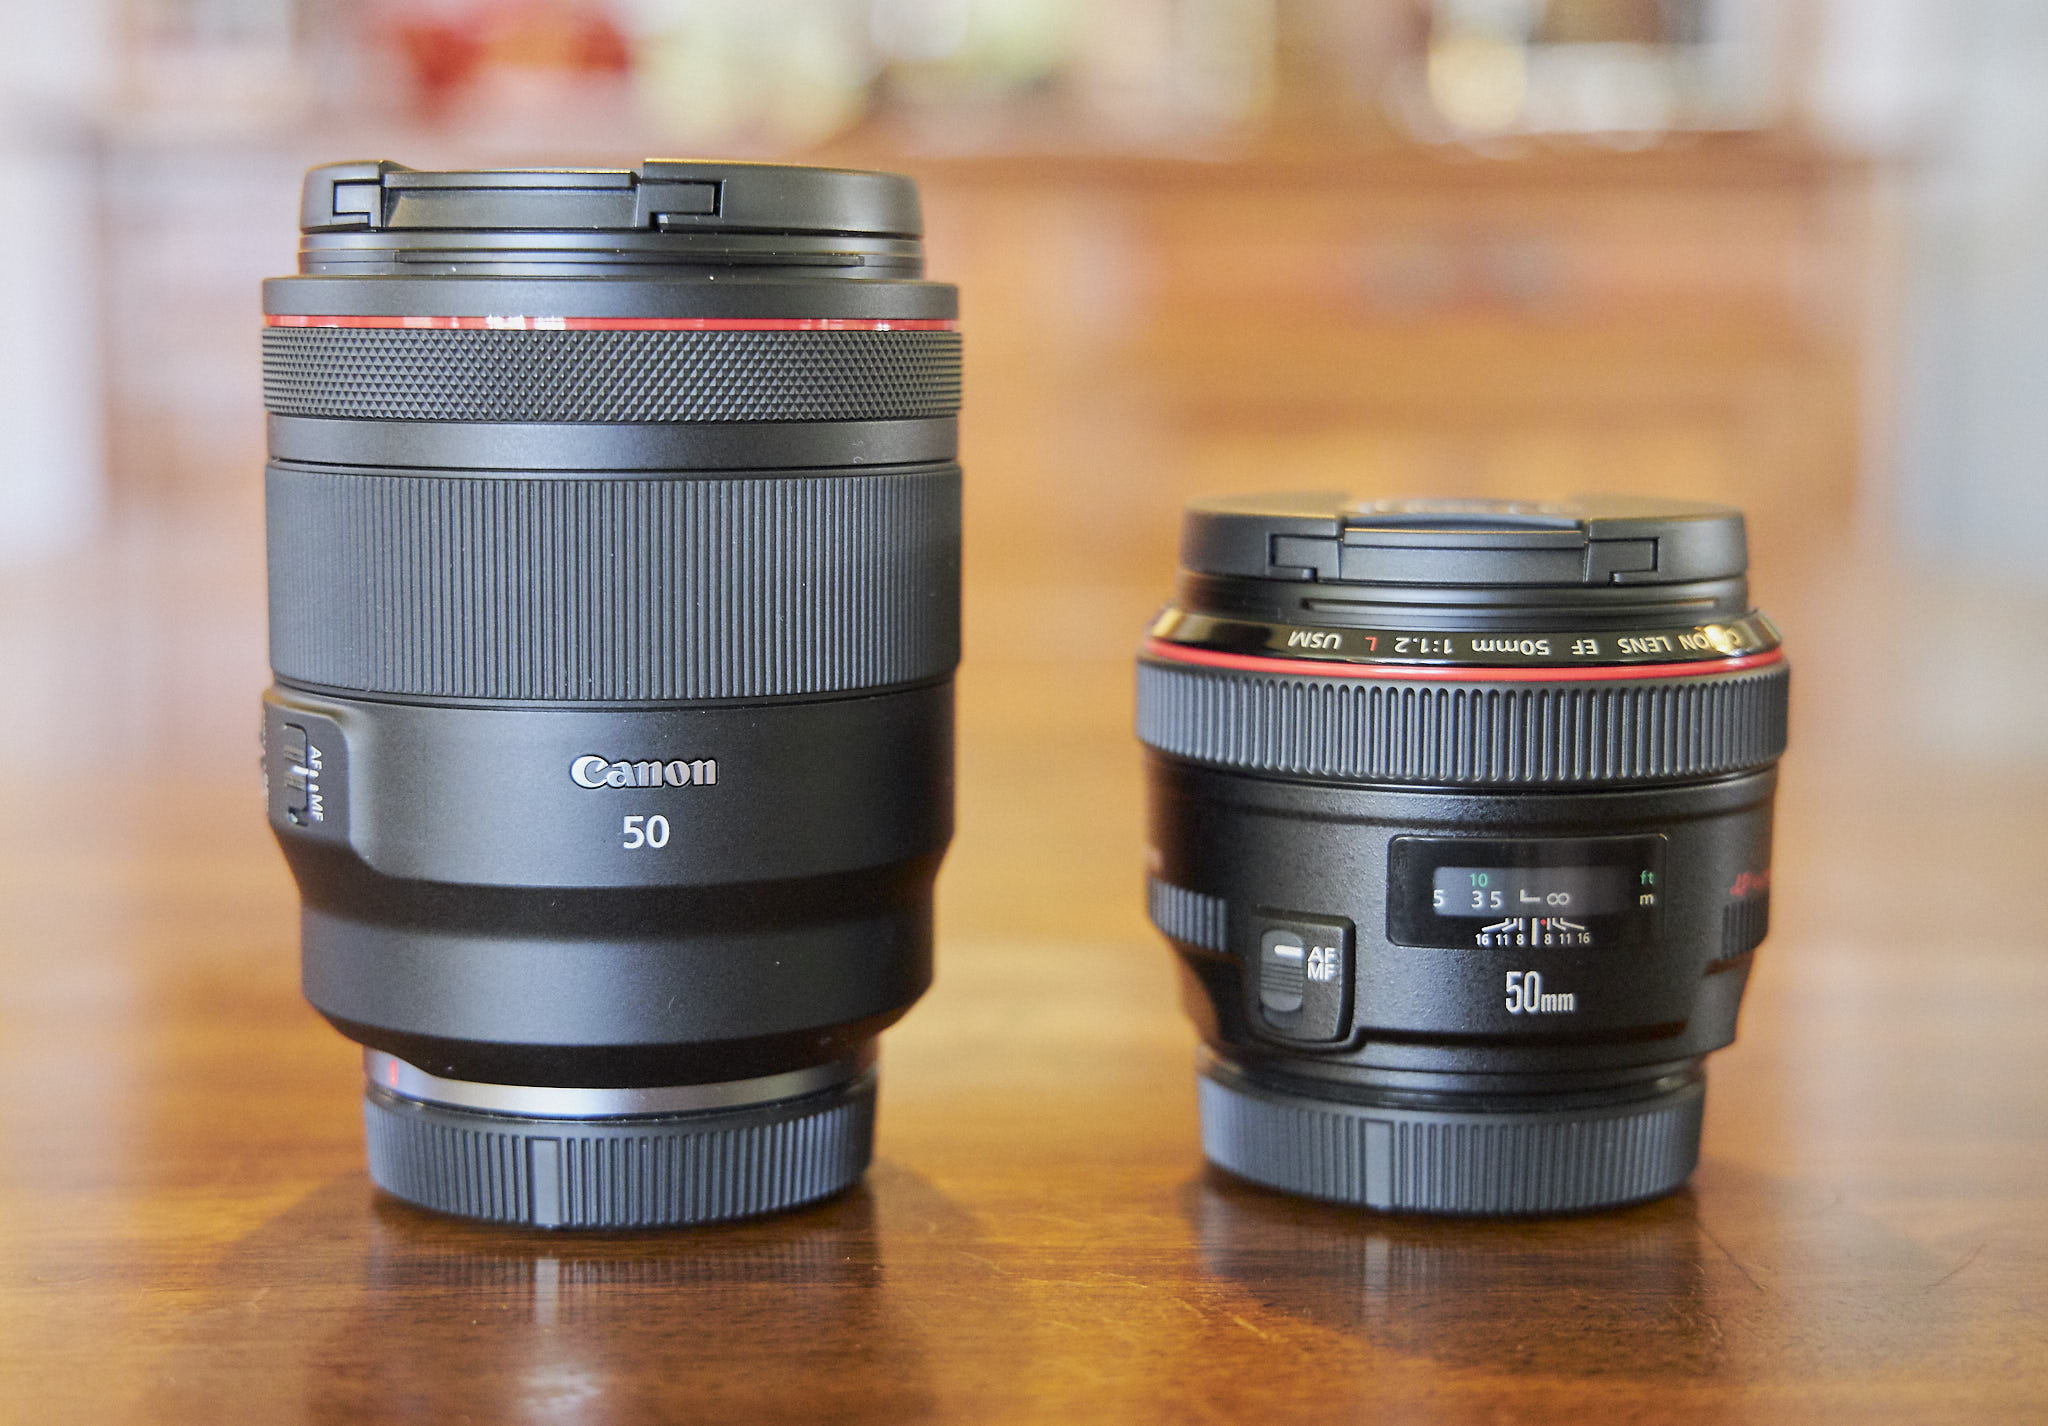 Canon RF 50mm f/1.2L USM Review - Lens Comparisons